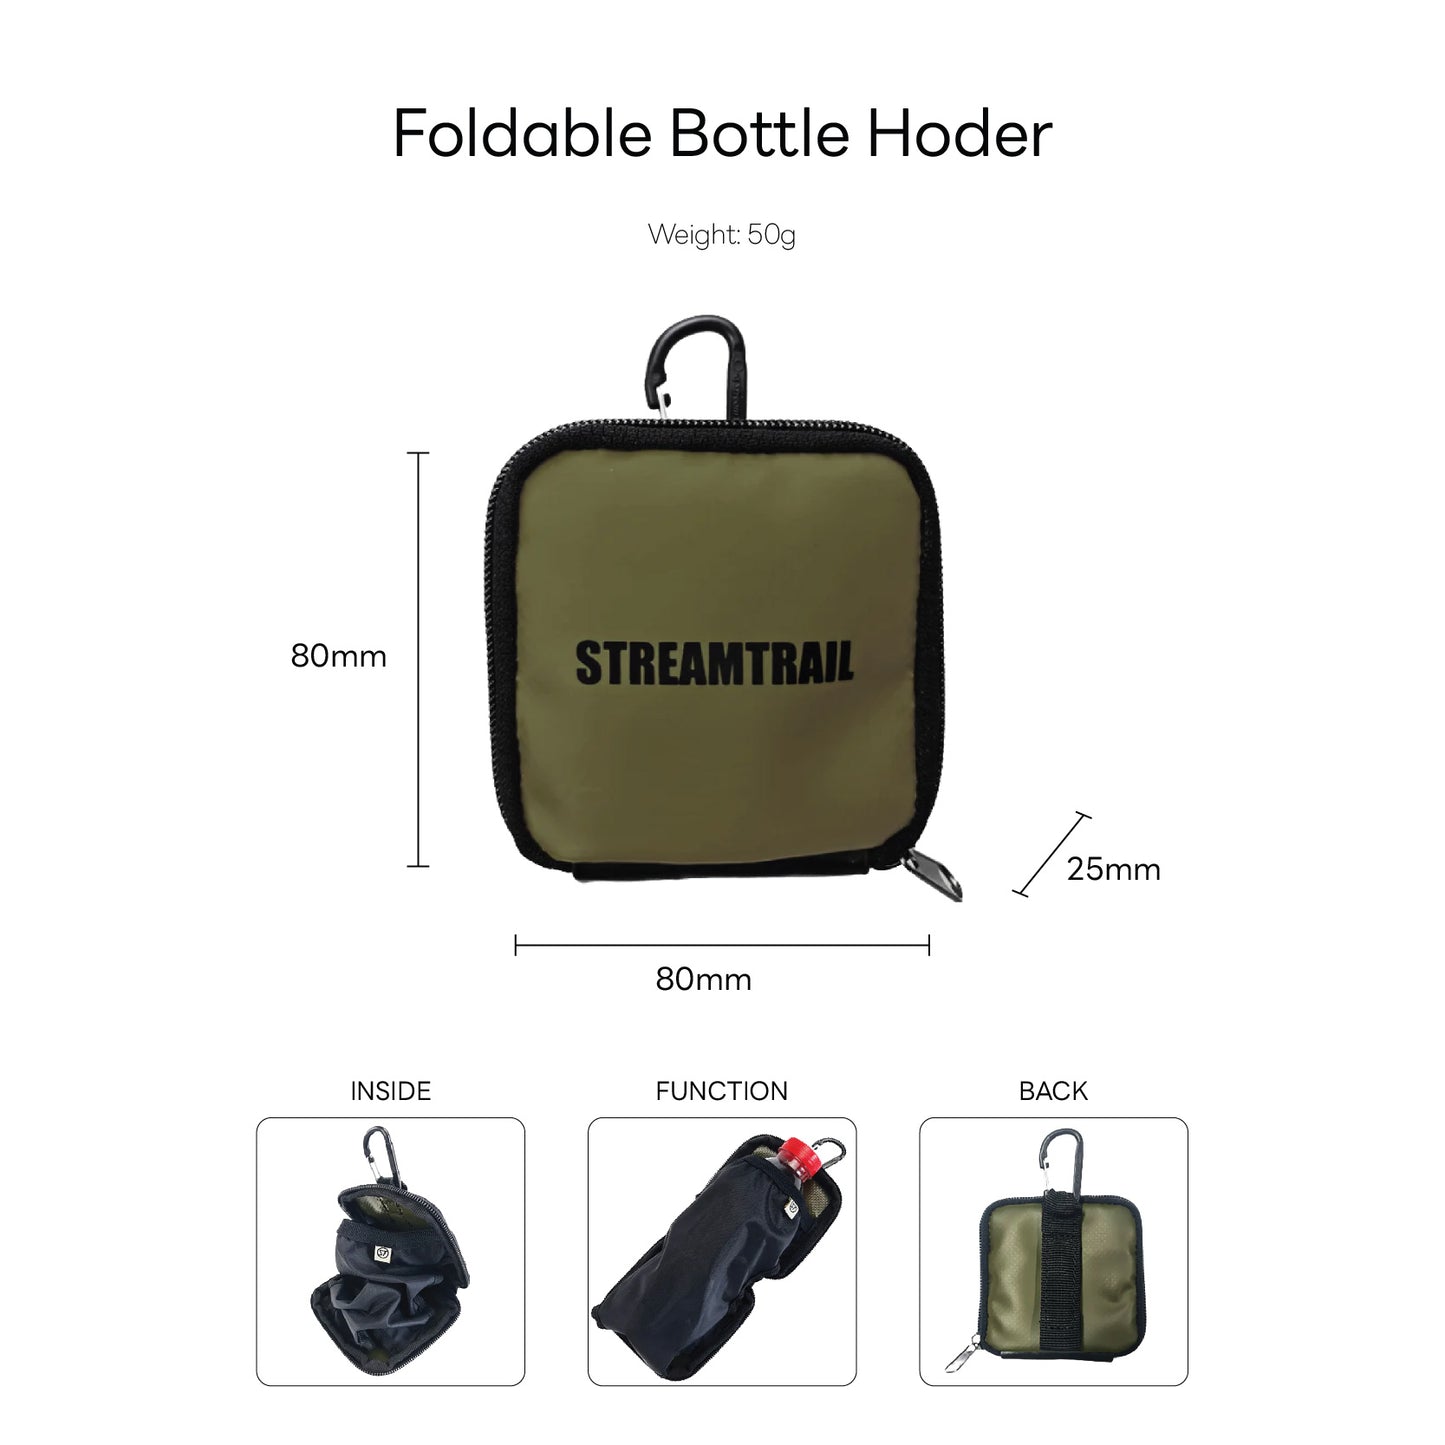 Foldable Bottle Holder